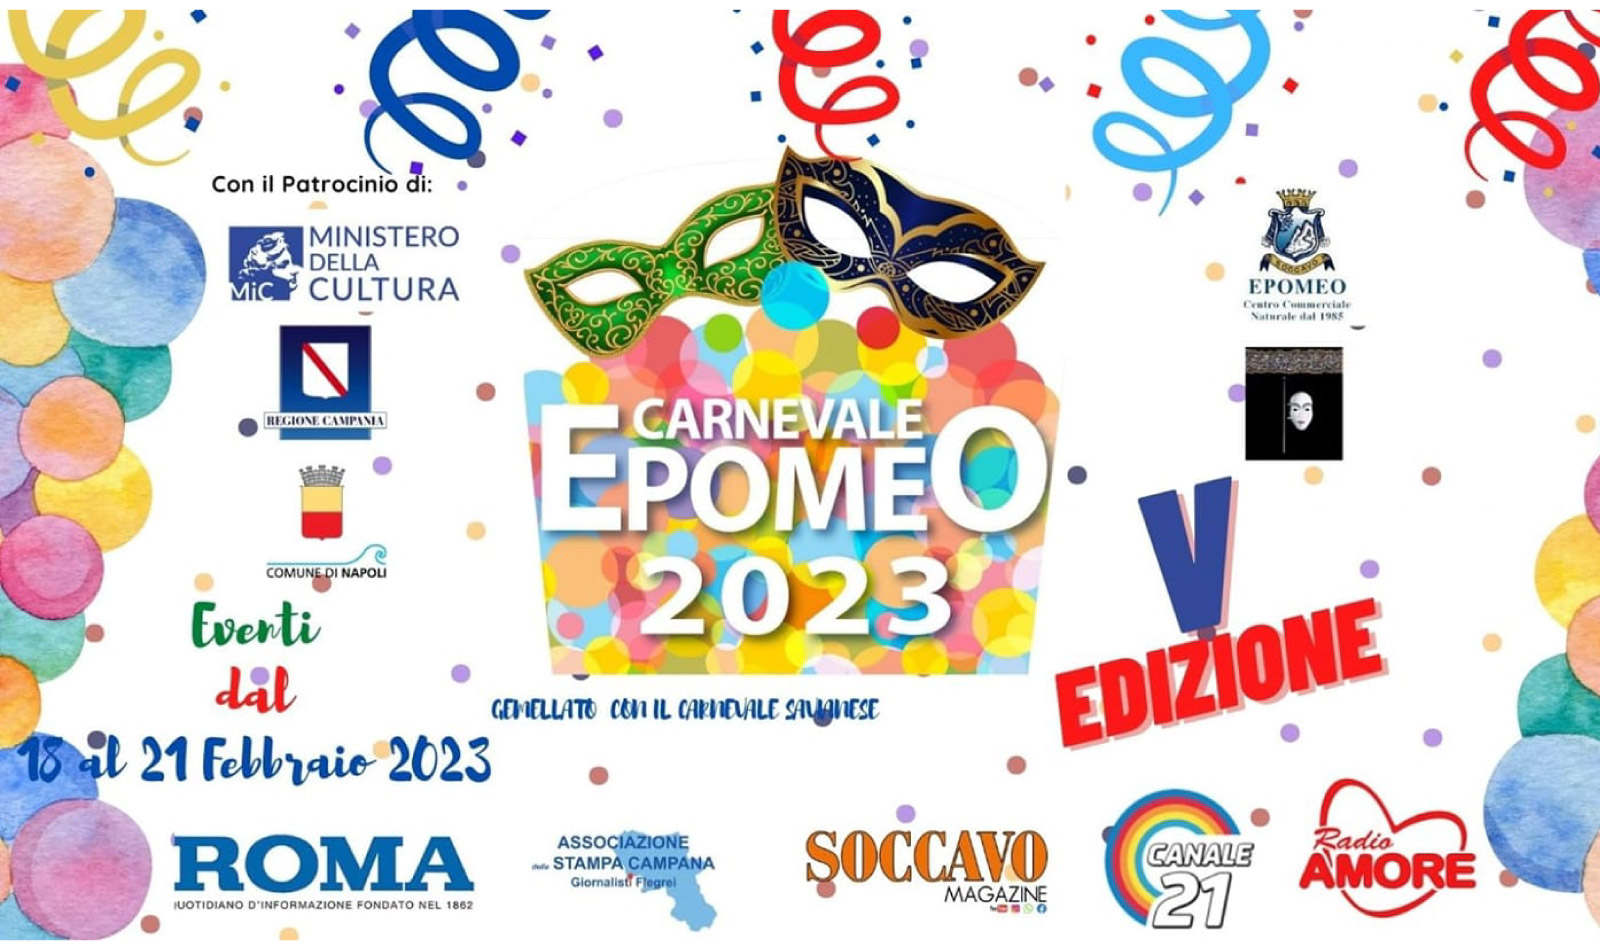 Carnevale Epomeo a Napoli con spettacoli, street food, sfilate: il programma